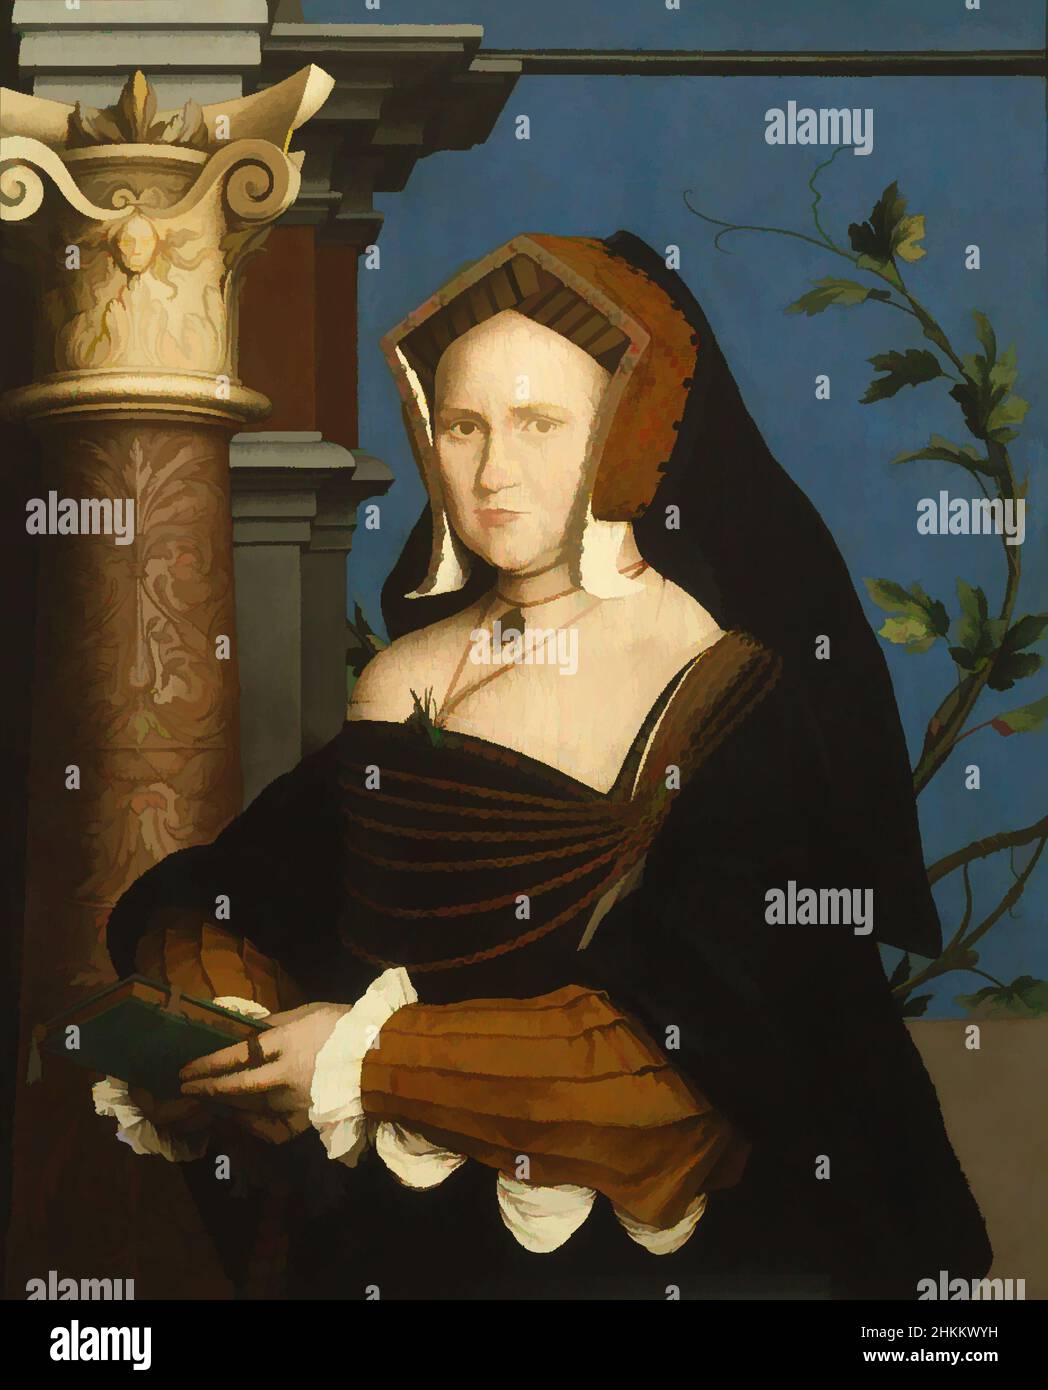 Arte ispirata da Mary, Lady Guildford, Hans Holbein the Younger, tedesco, 1497/98-1543, Lady Mary Wooten Guildford, inglese, c.1490-c.1527, 1527, olio su pannello, Made in England, Europe, dipinti, 34 1/4 x 27 13/16 pollici (87 x 70,6 cm, opere classiche modernizzate da Artotop con un tuffo di modernità. Forme, colore e valore, impatto visivo accattivante sulle emozioni artistiche attraverso la libertà delle opere d'arte in modo contemporaneo. Un messaggio senza tempo che persegue una nuova direzione selvaggiamente creativa. Artisti che si rivolgono al supporto digitale e creano l'NFT Artotop Foto Stock